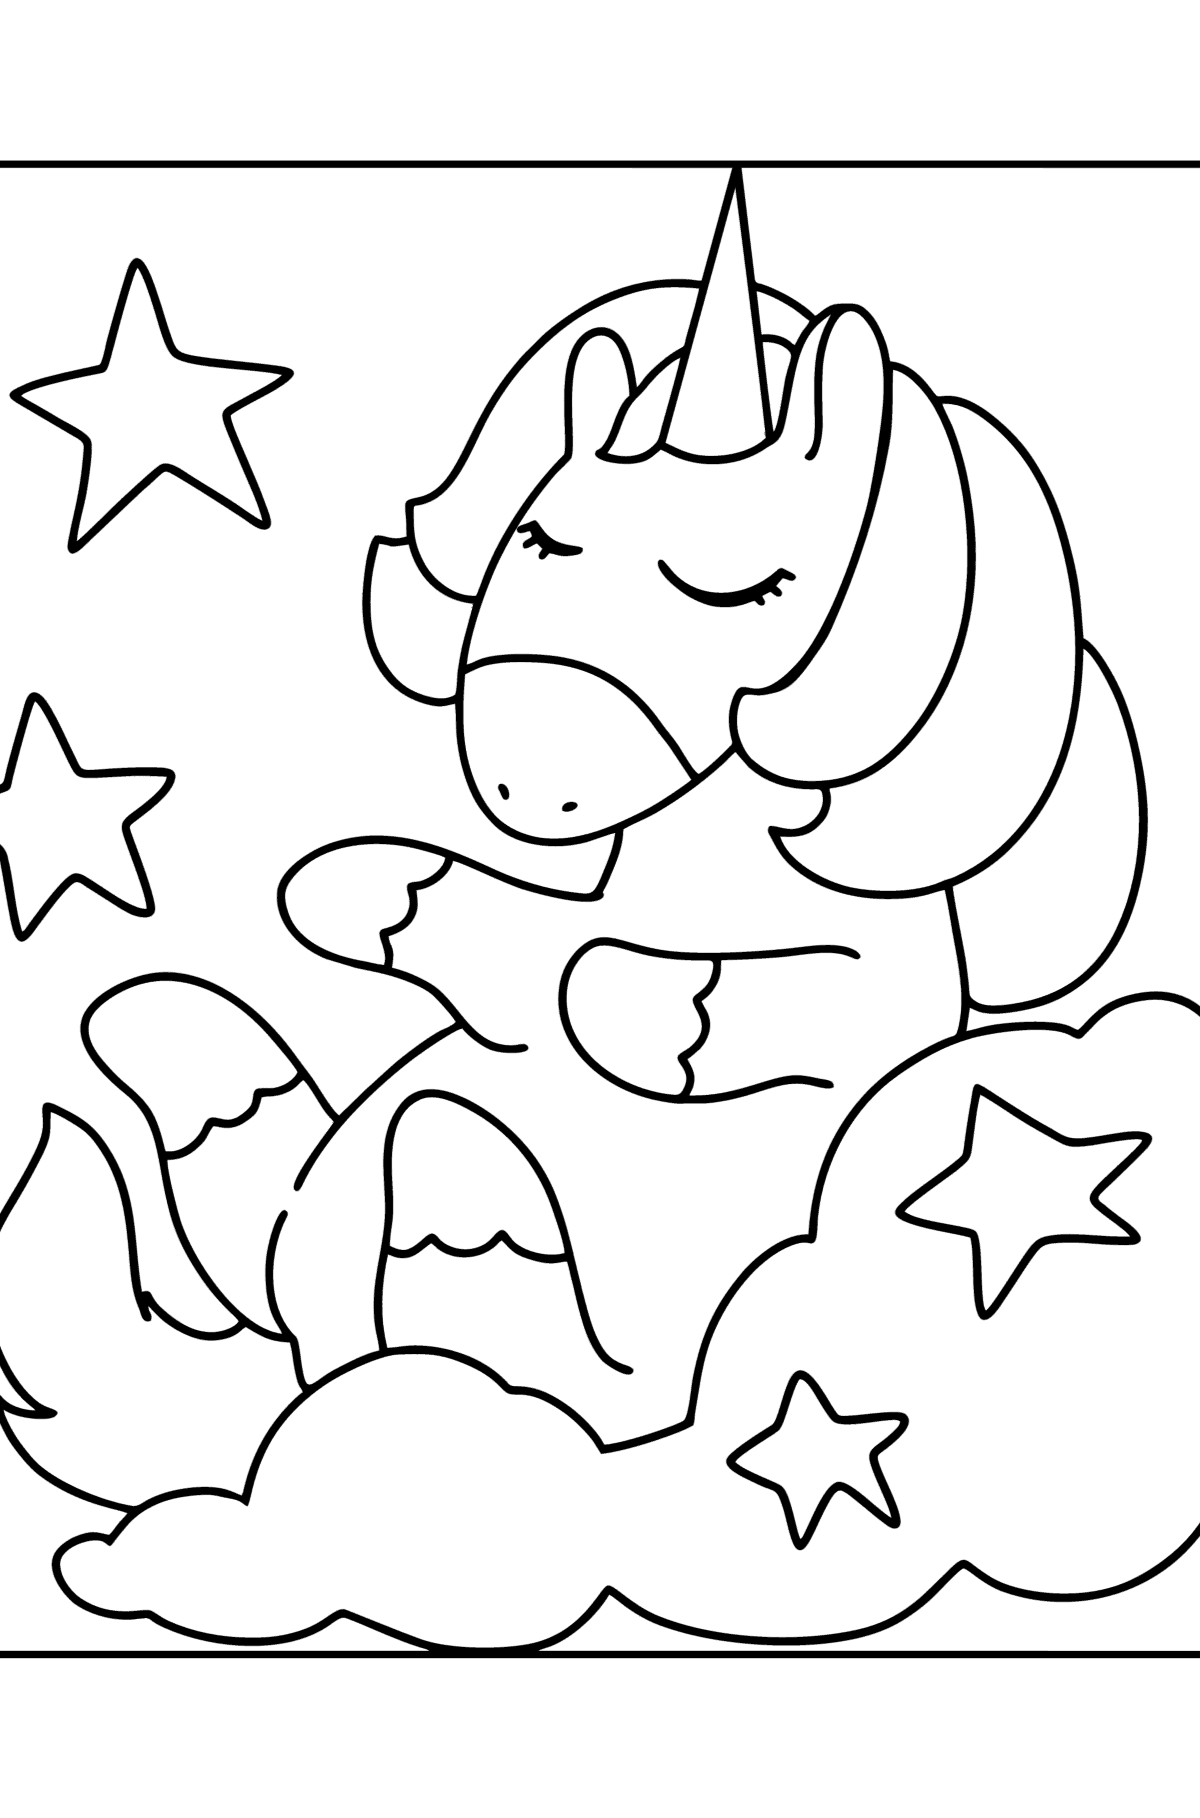 Dibujo para colorear de Unicornio divertido - Dibujos para Colorear para Niños